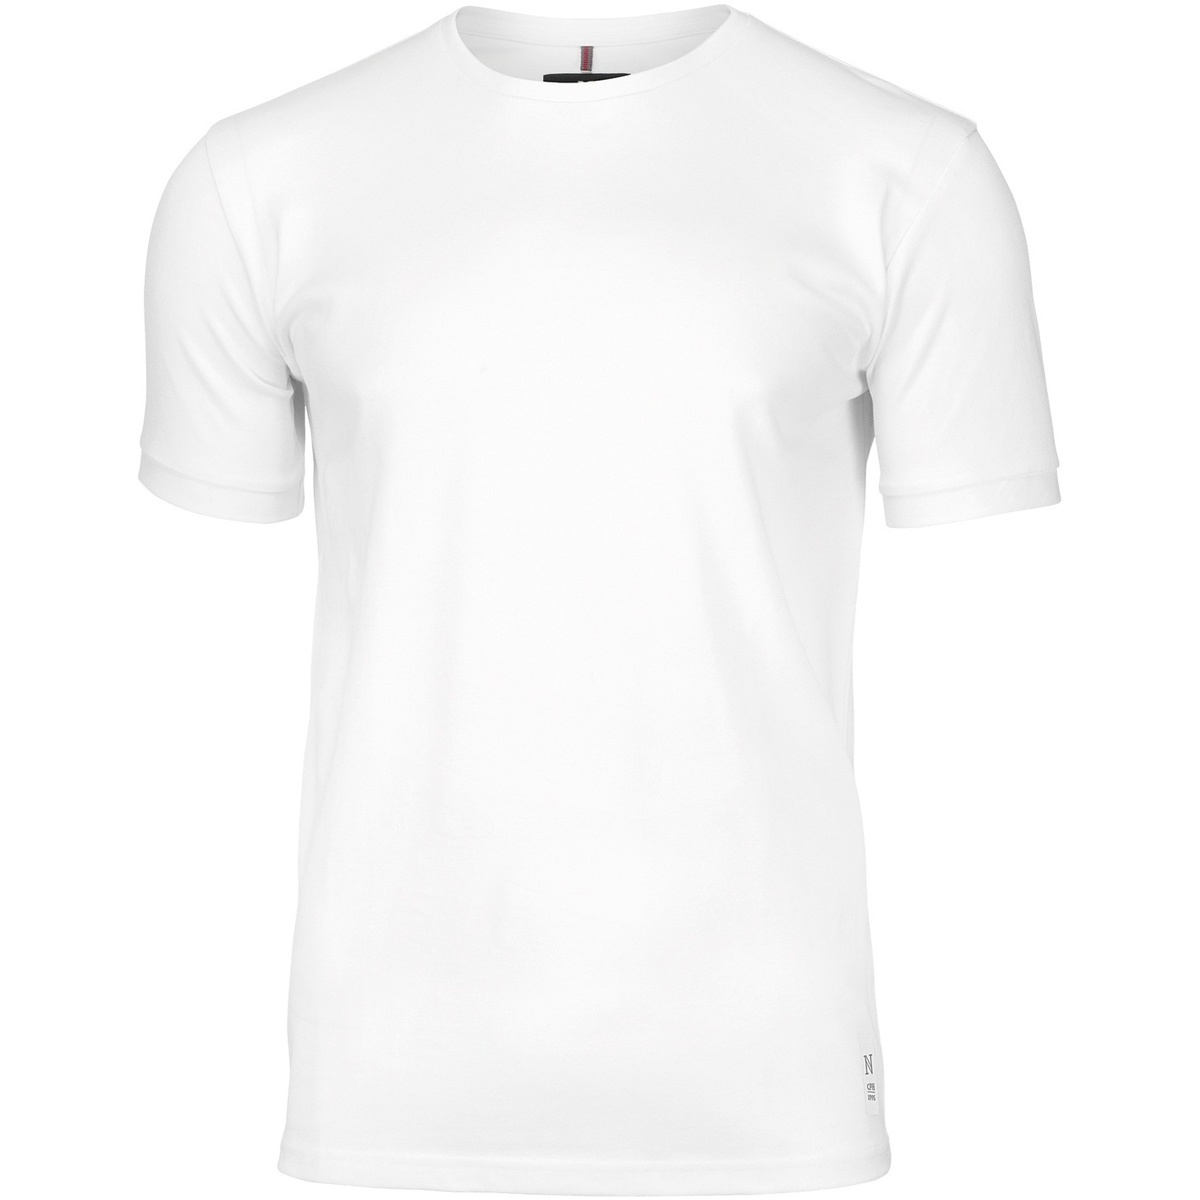 Vêtements Homme John Elliott Interval T-Shirt Grün Danbury Blanc